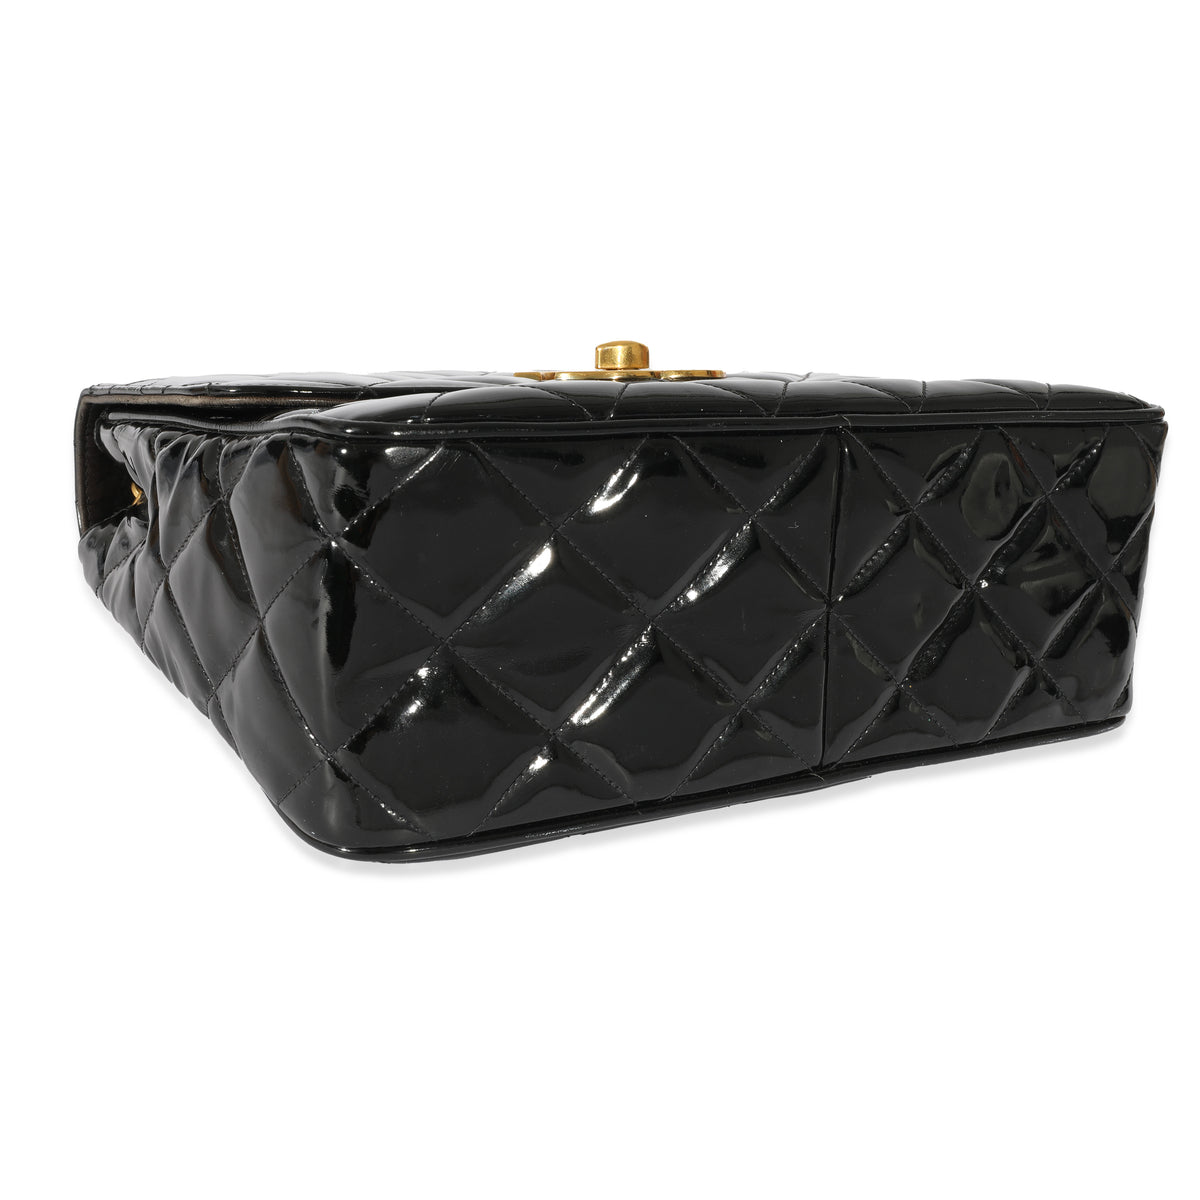 CHANEL Black Patent Leather Vintage Box Shoulder Bag